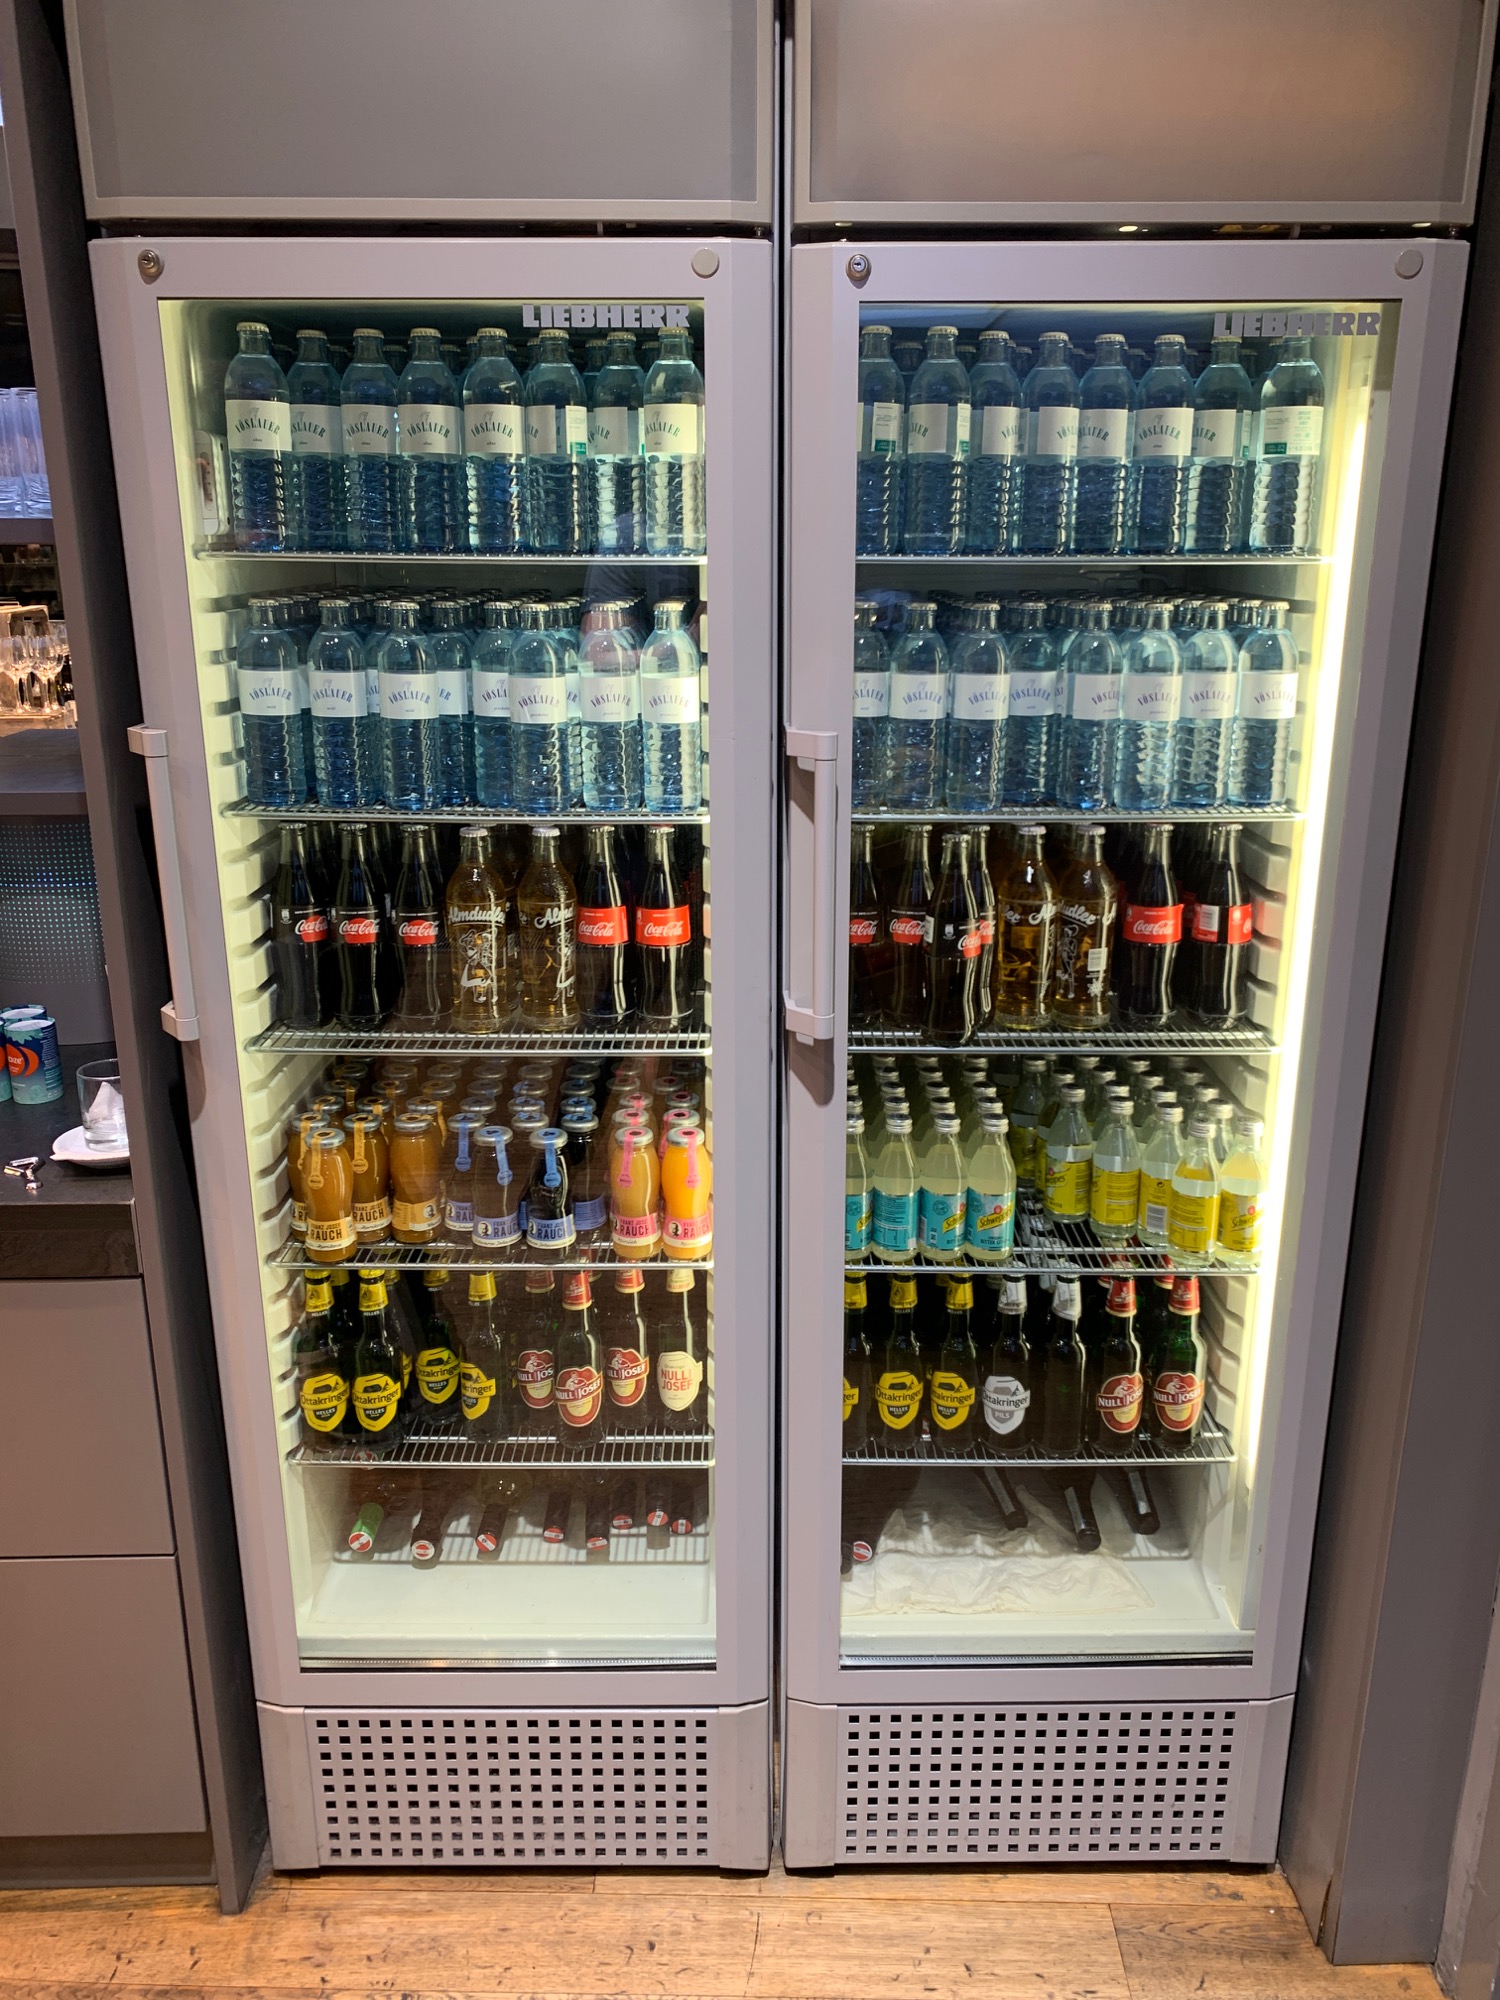 a refrigerator full of drinks